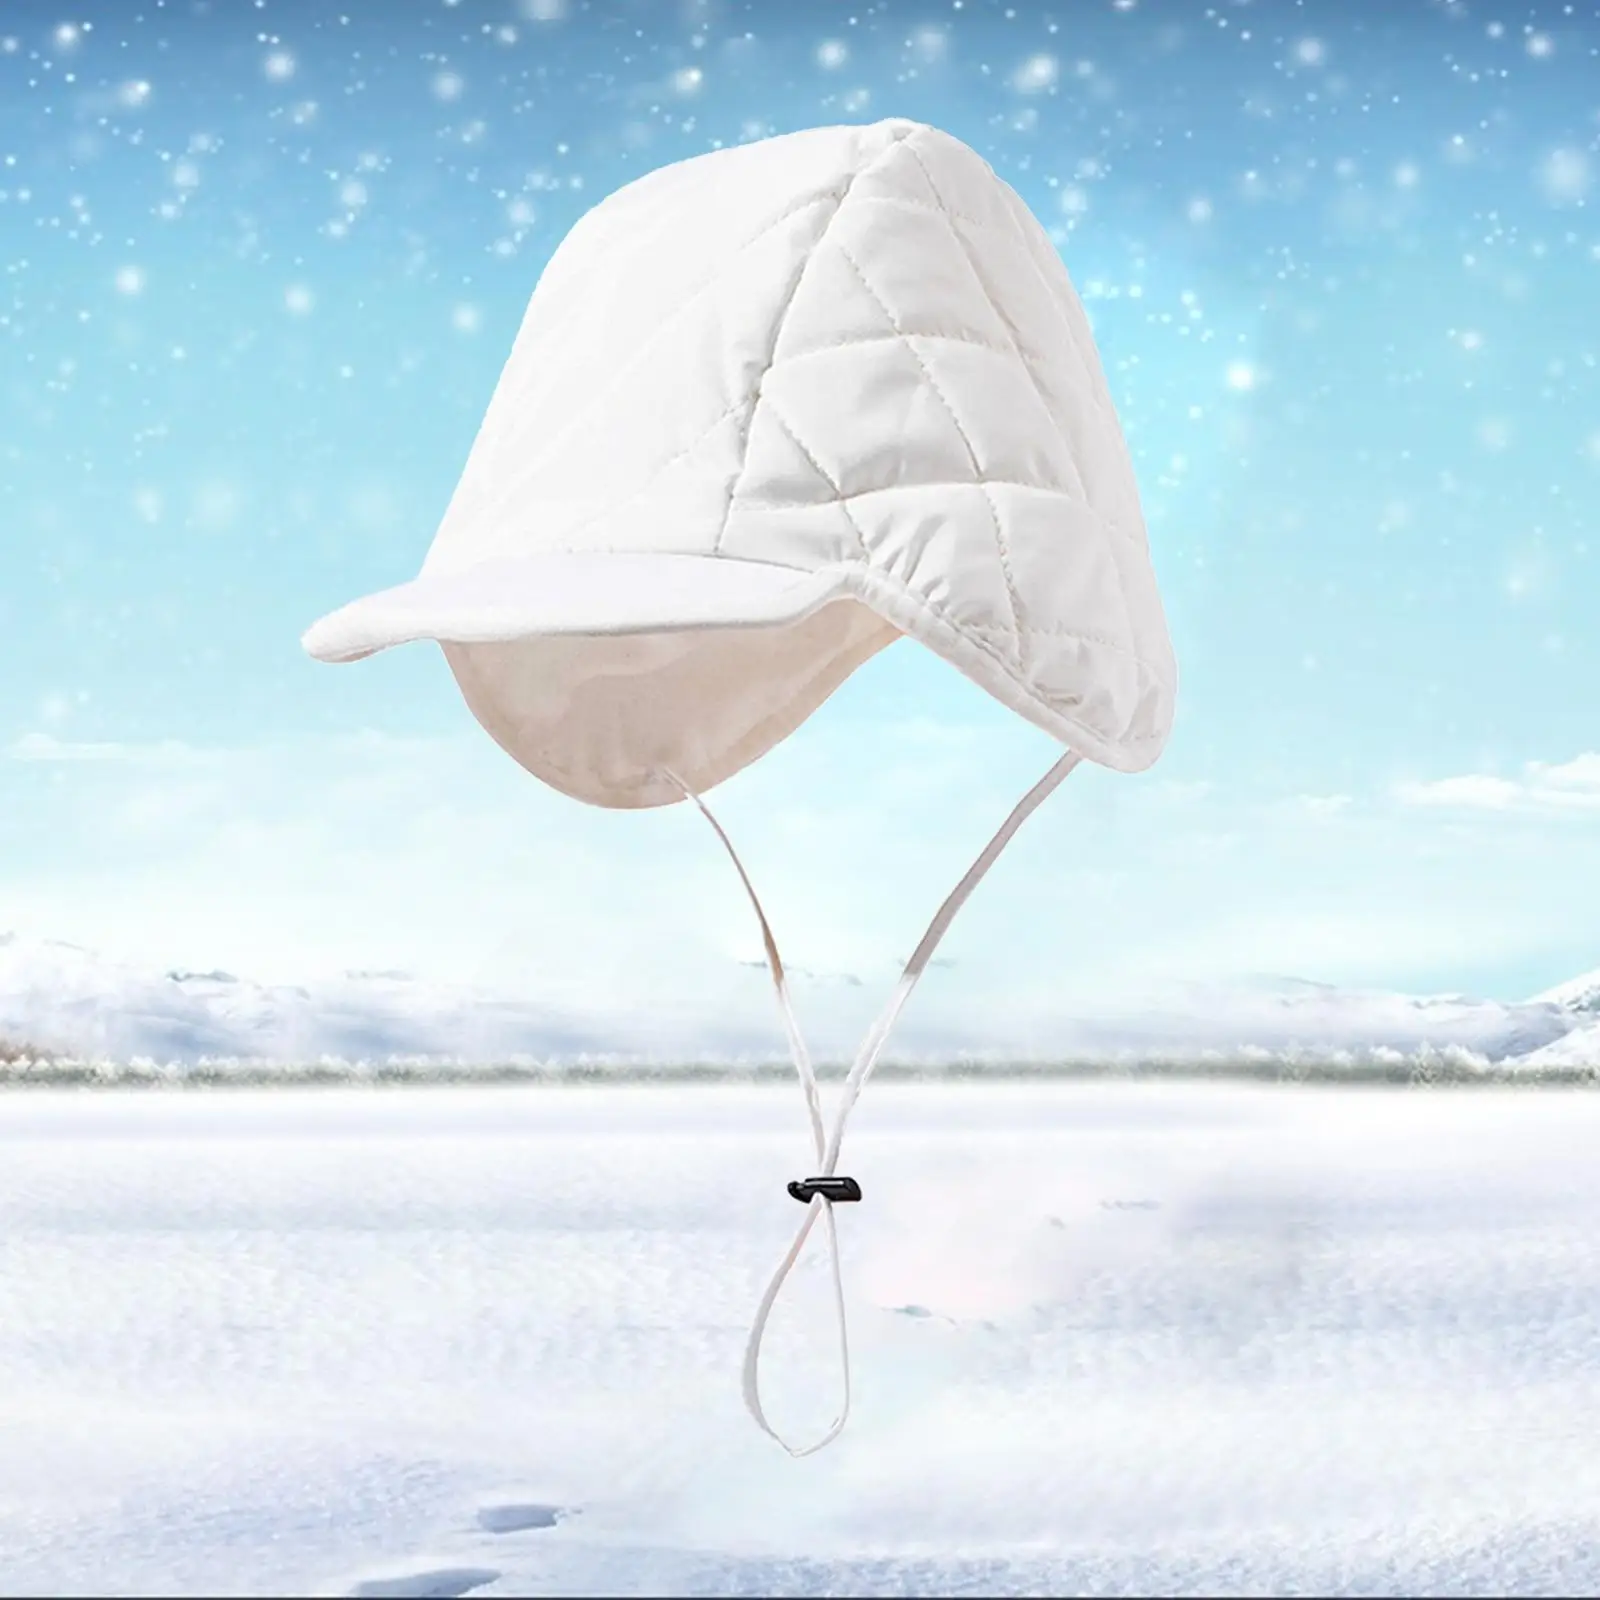 Winter Ear Flap Winter Hat Windproof Hunting Bomber Fleece Lined Ski